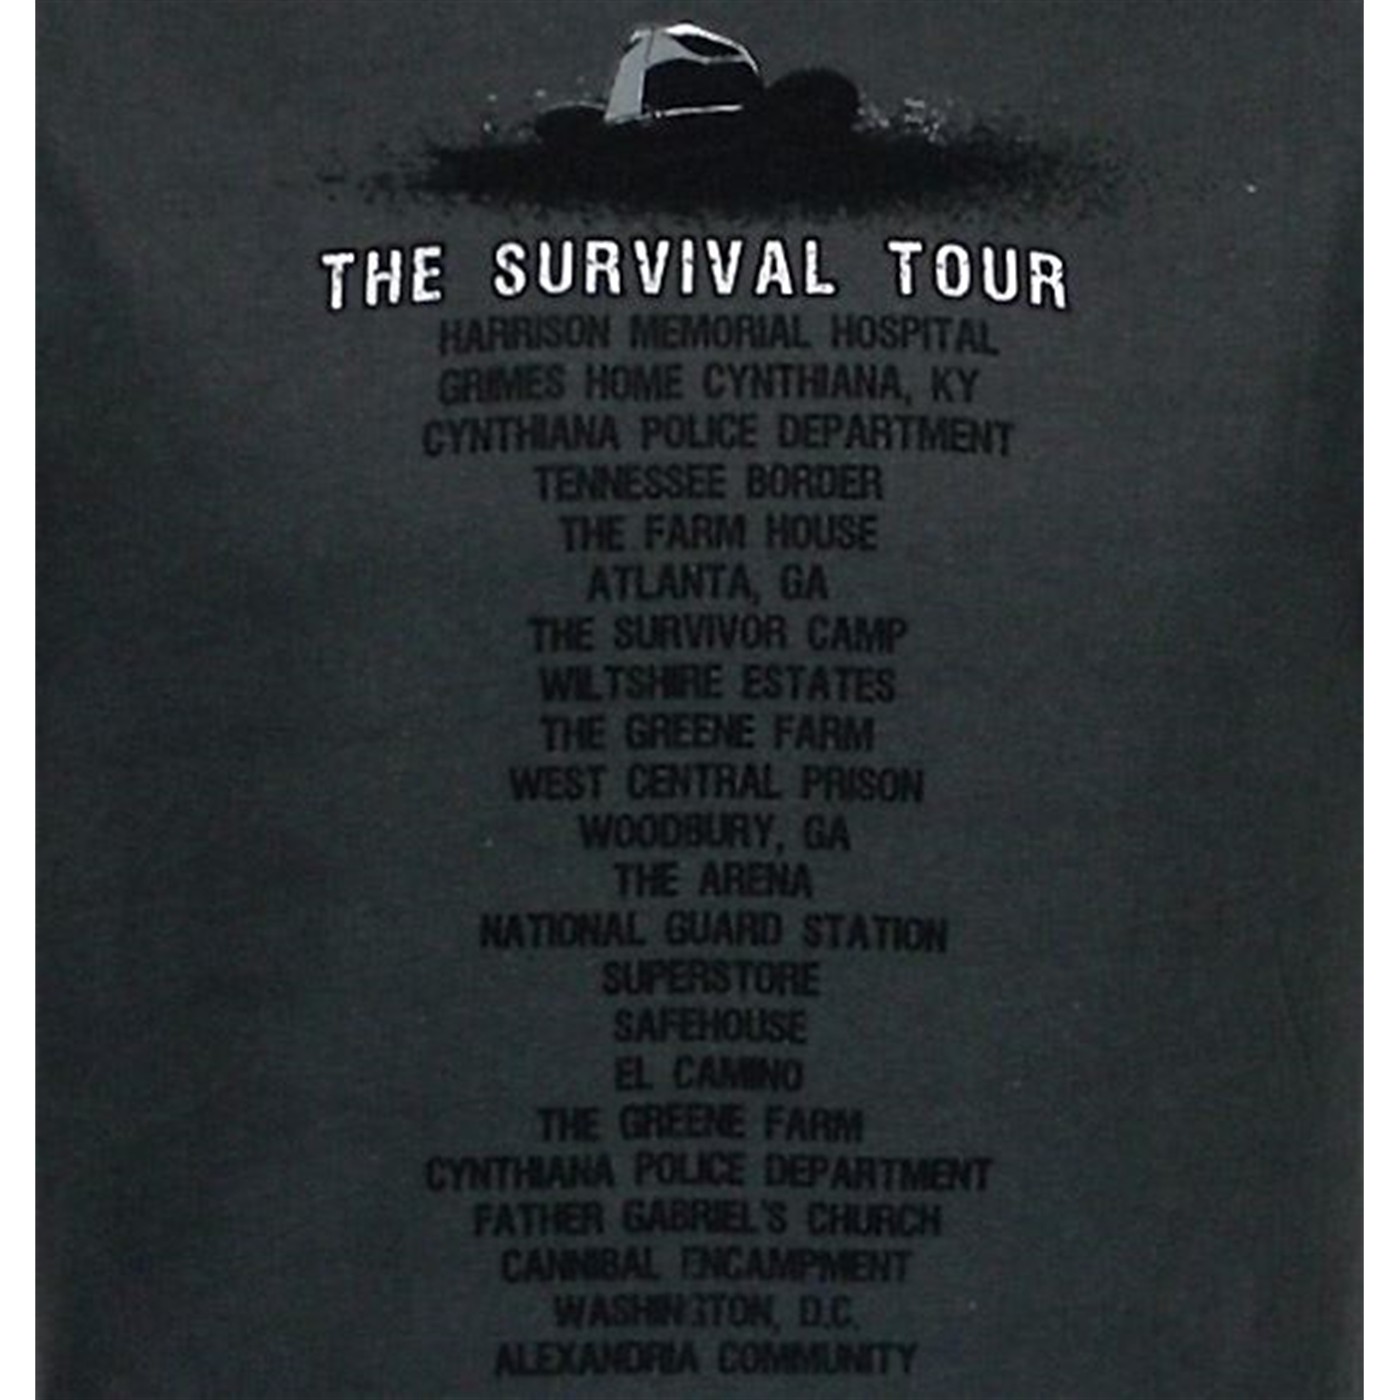 Walking Dead Survival Tour 30 Single T-Shirt